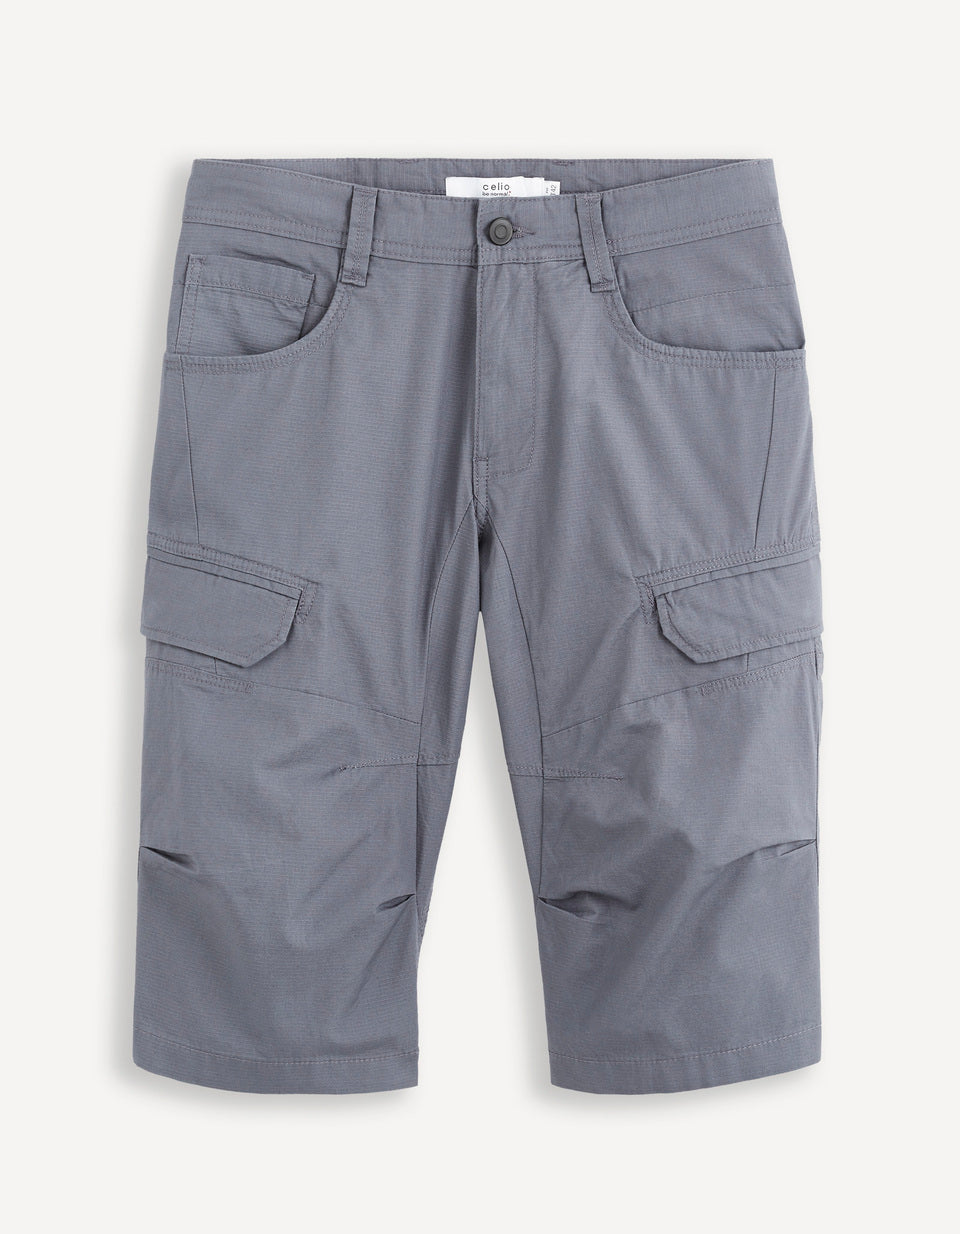 100% Cotton Cargo Shorts - Gray - 05